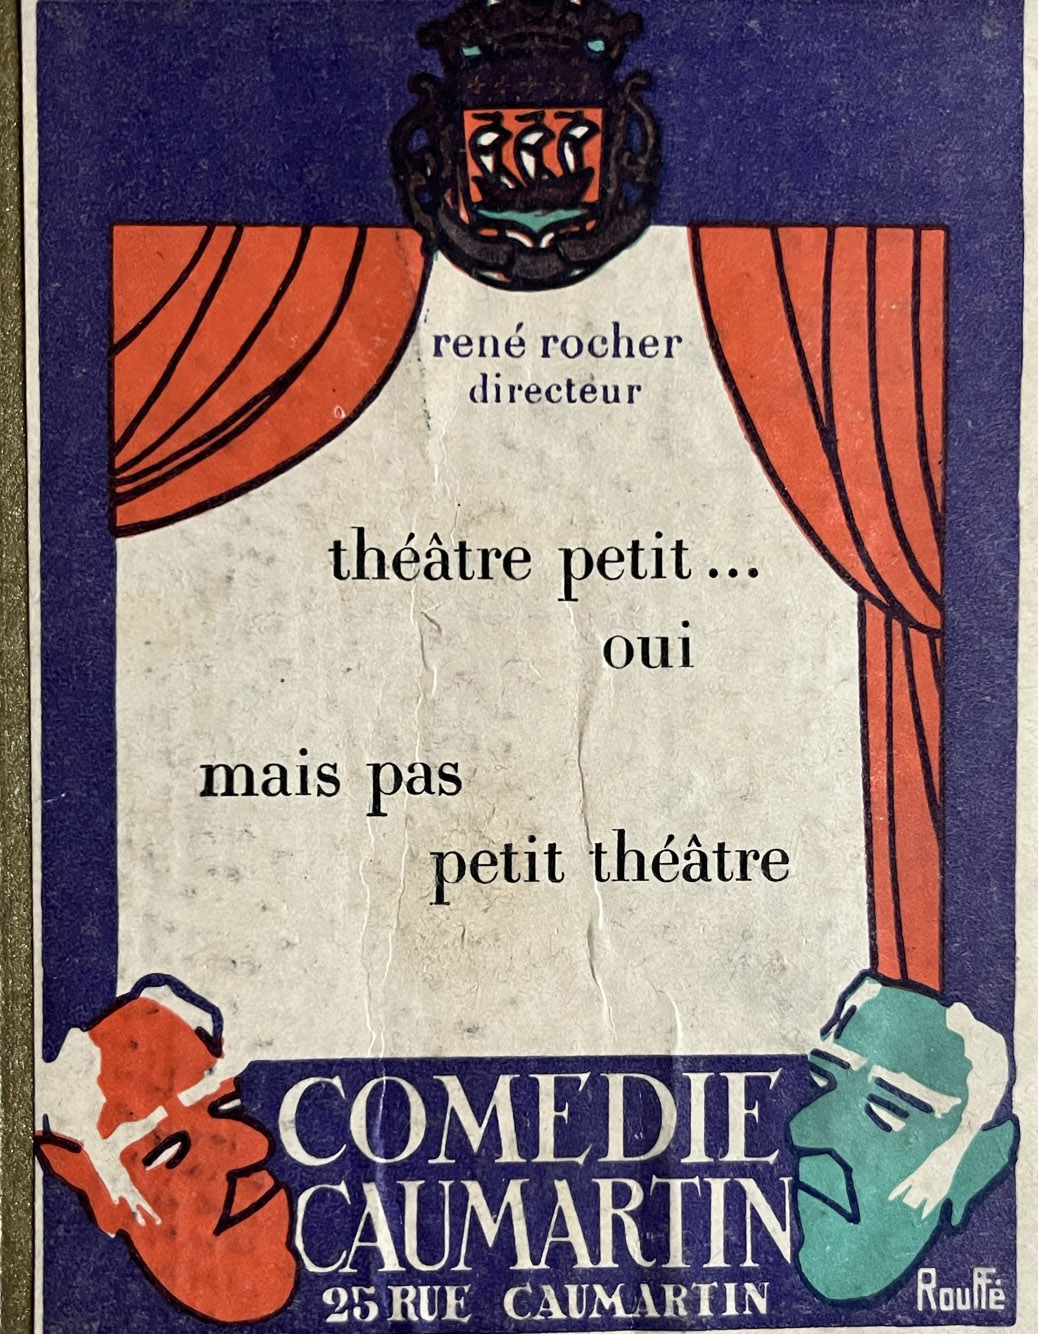 En 1901, l'actuelle Comédie Caumartin portait le nom de « Comédie-Royale ». Y ont été toujours privilégiés le rire et l'humour ; de Georges Feydeau et Sacha Guitry à Marc Camoletti avec 